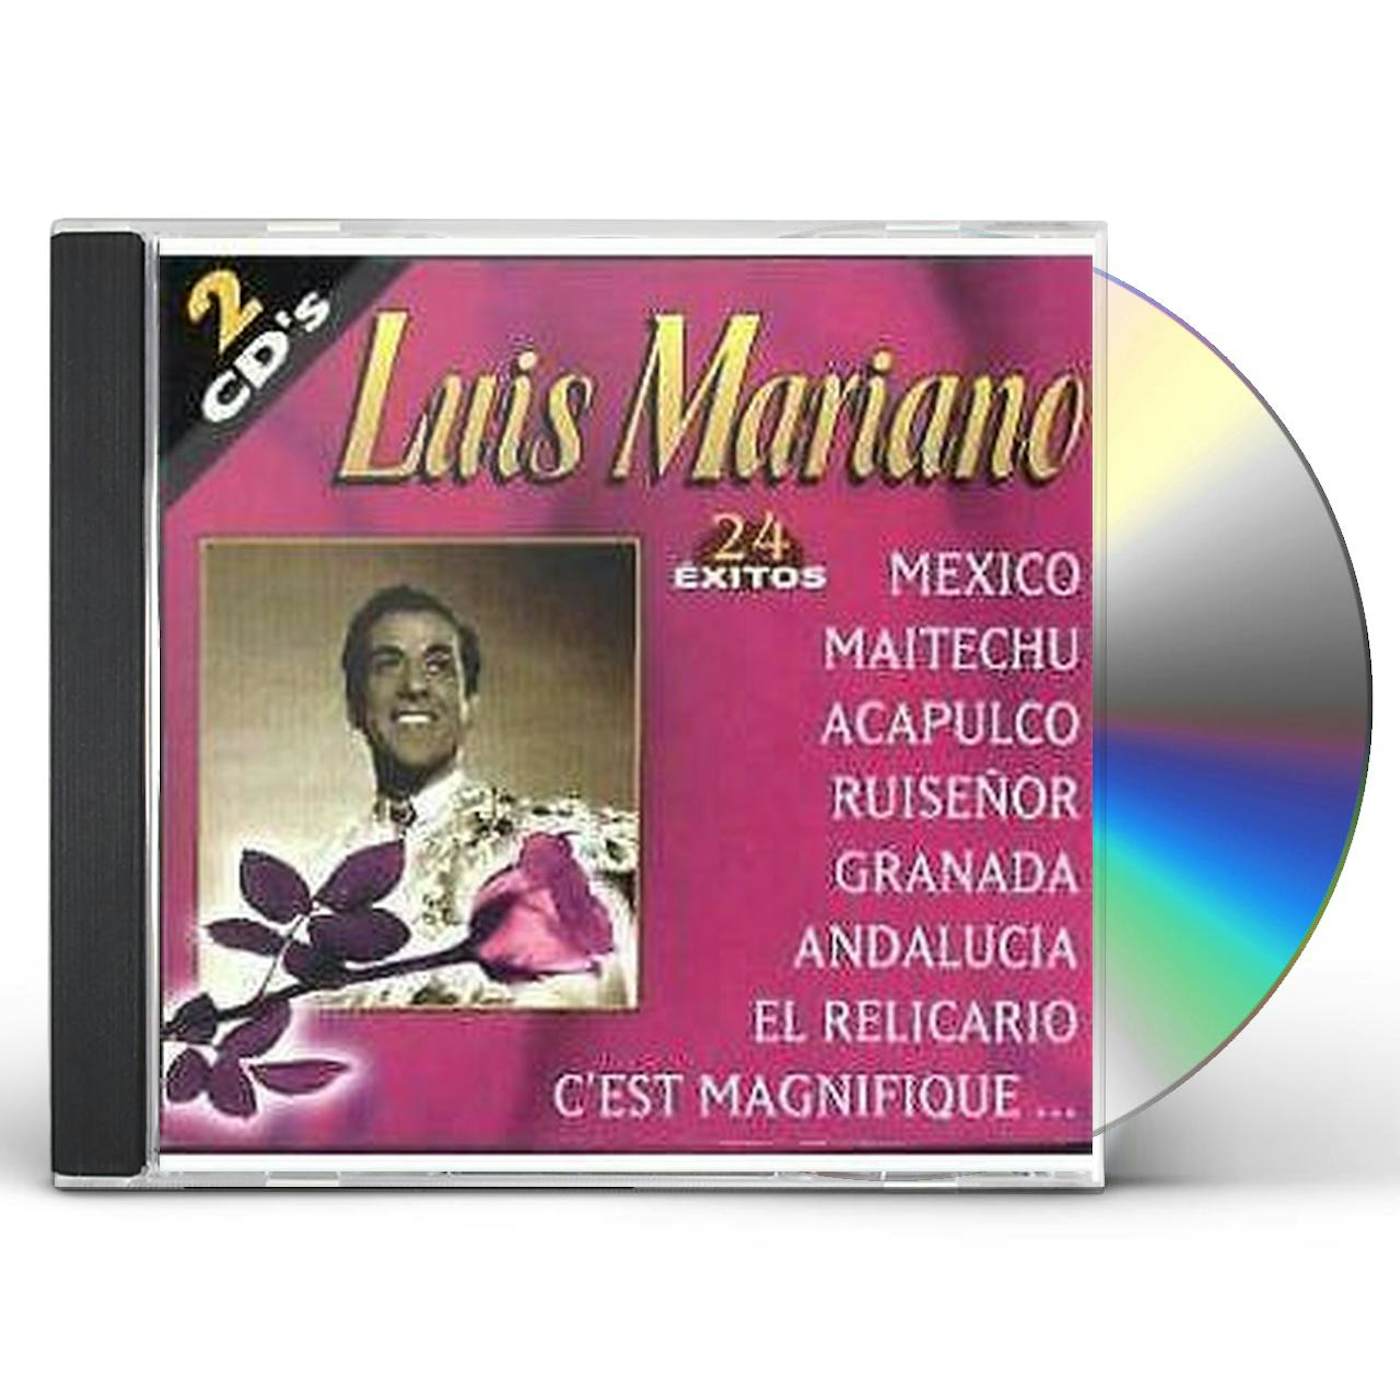 Luis Mariano 24 EXITOS CD